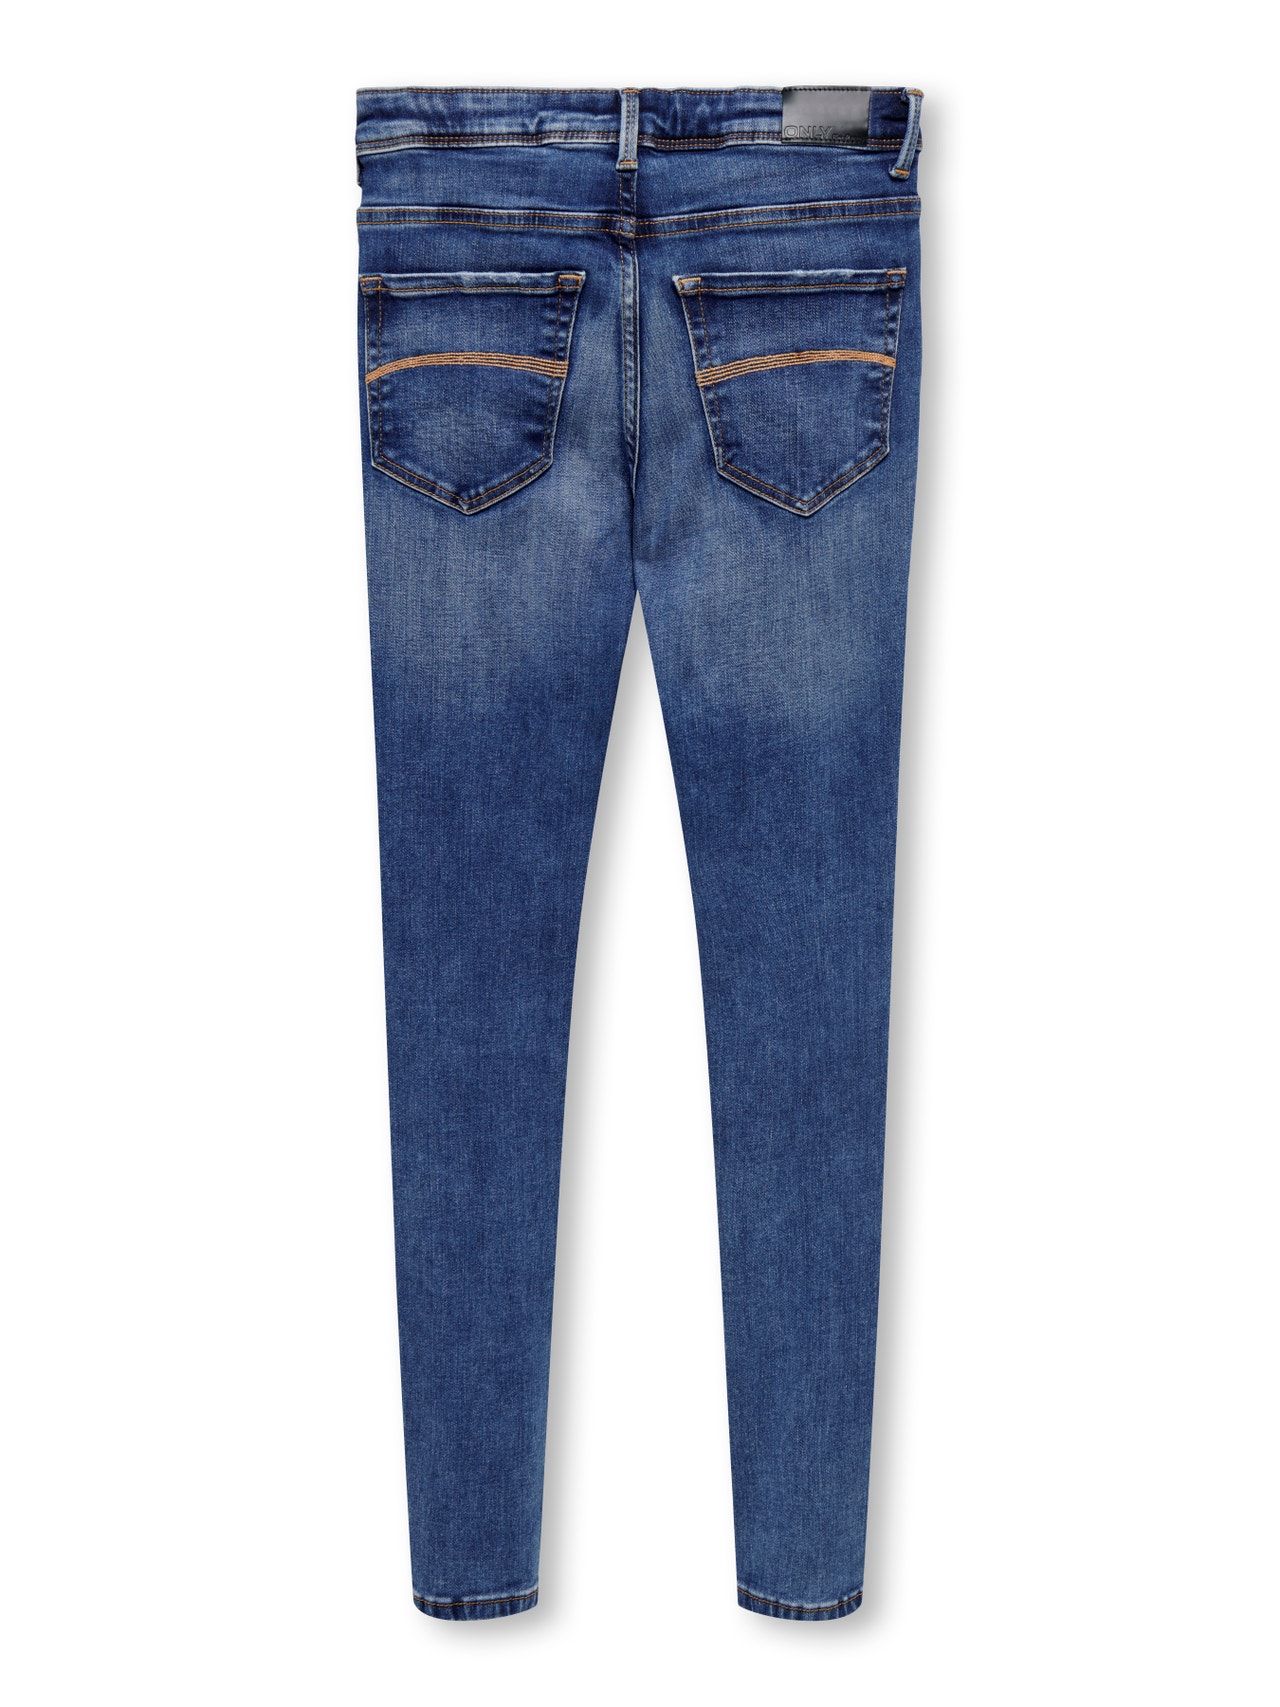 ONLY Skinny Fit Destroyed hems Jeans -Dark Blue Denim - 15268195